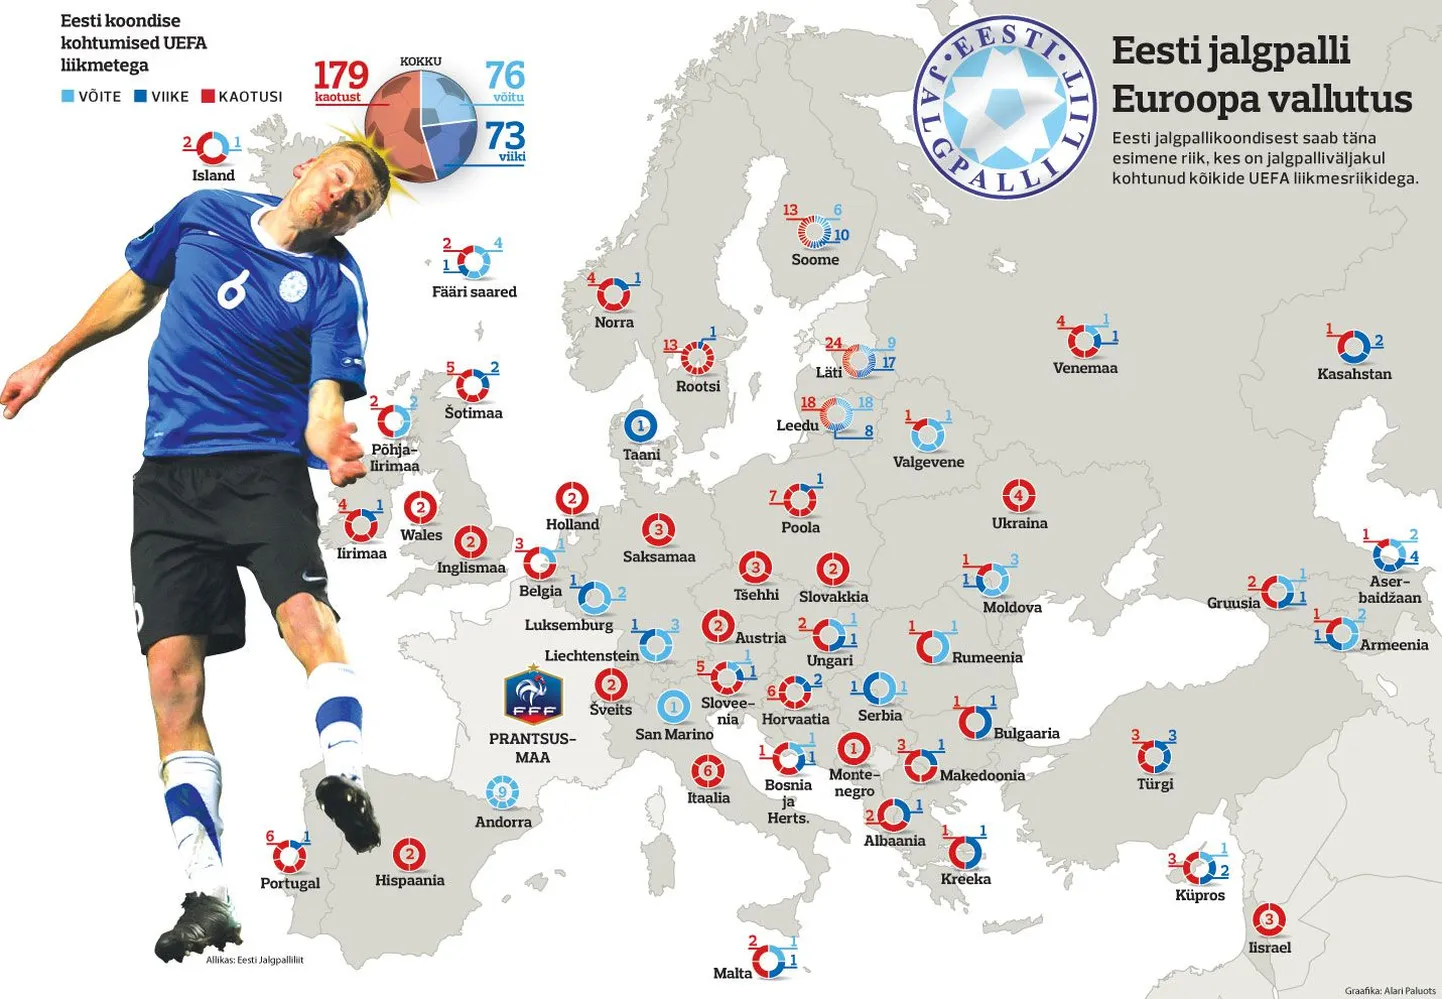 Eesti jalgpalli Euroopa vallutus.